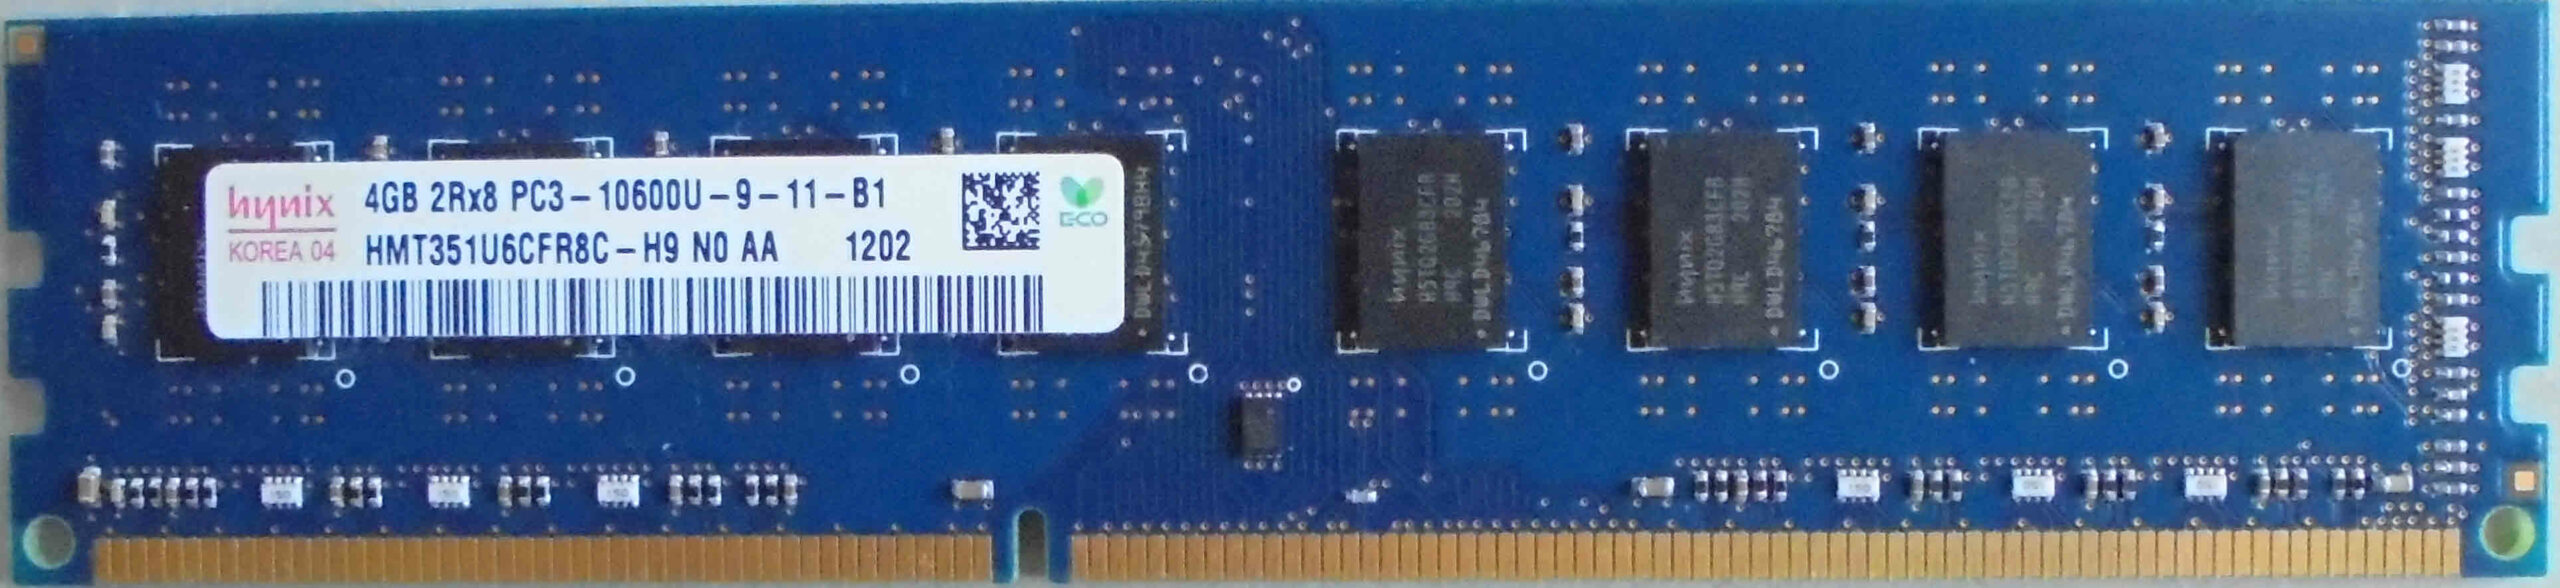 Hynix 4GB 2Rx8 PC3-10600U-9-11-B1